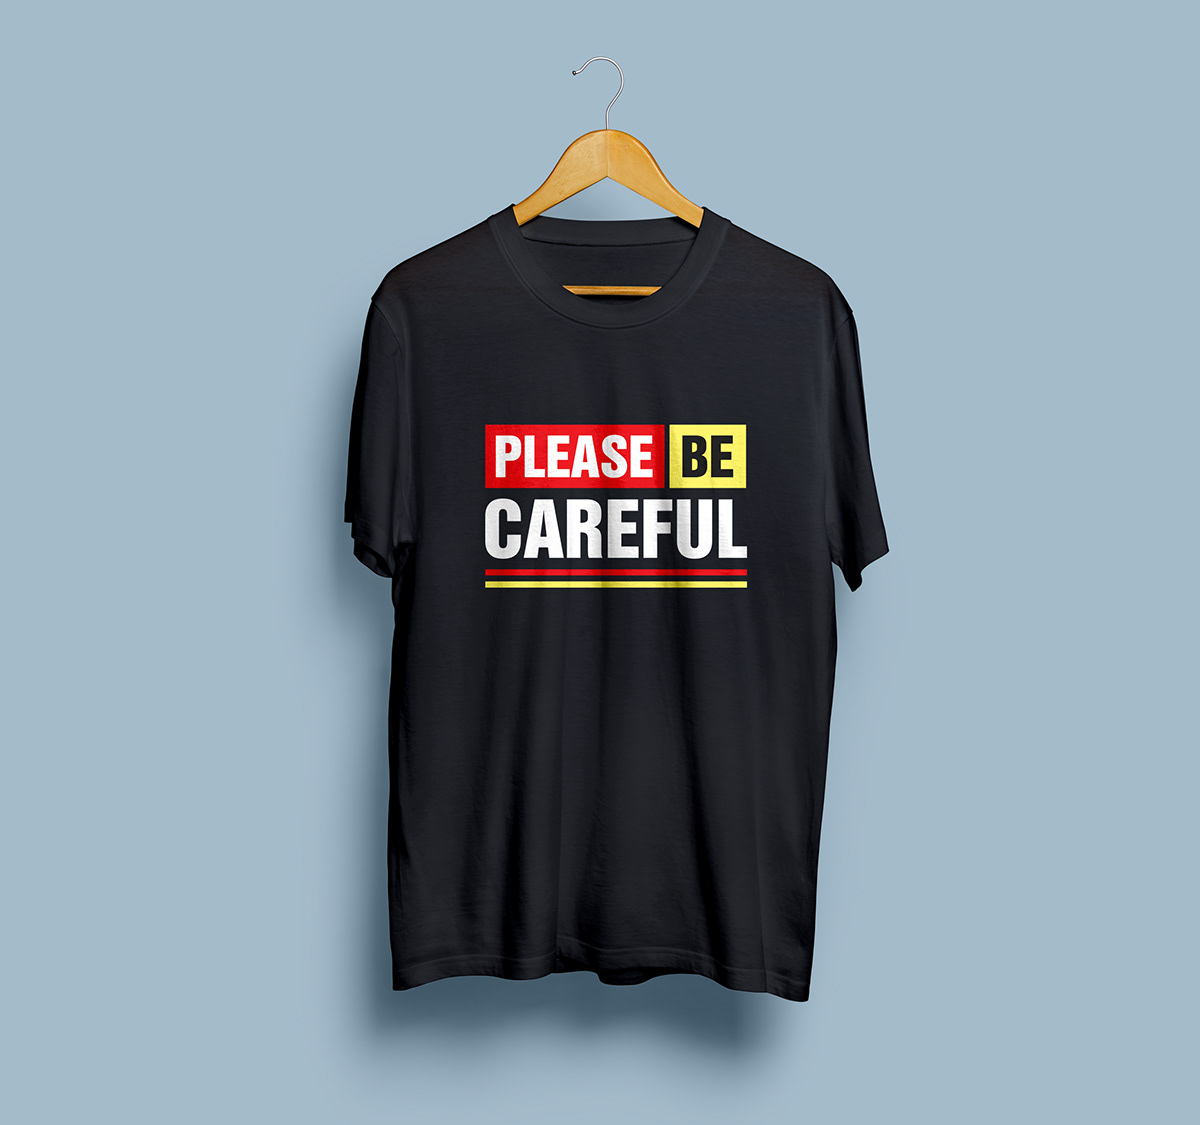 t shirt design t-shirt text please design shirt template be careful Shirt desgin